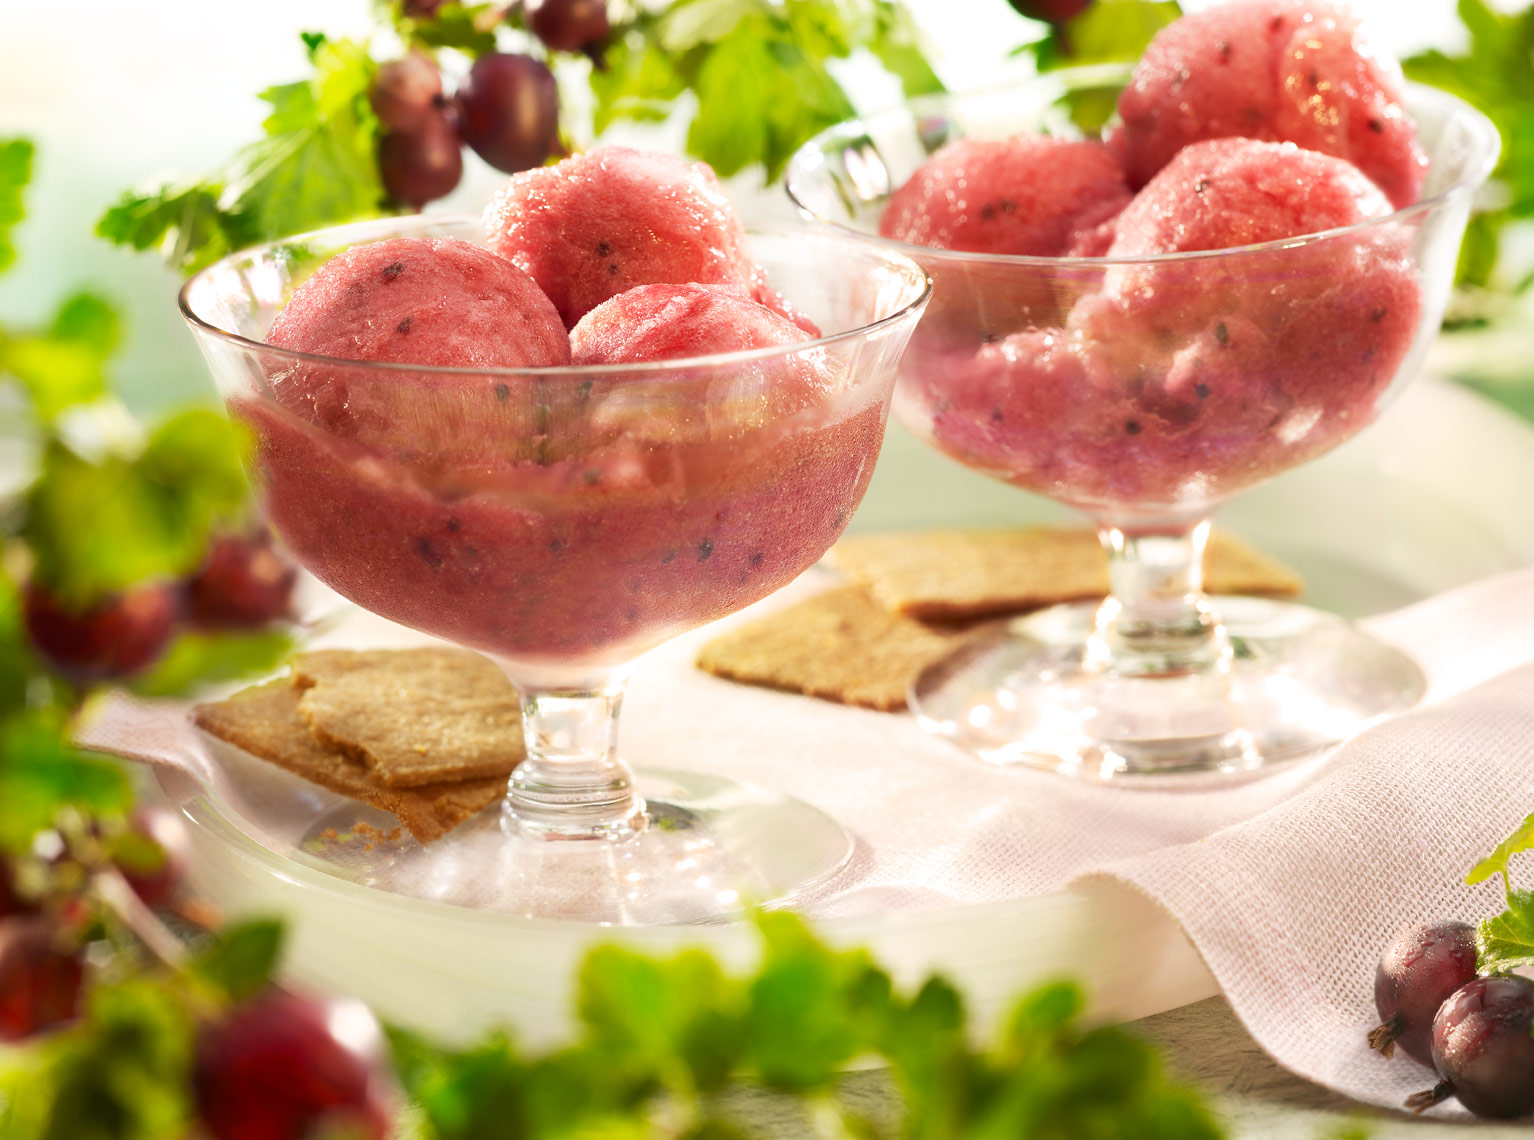 Gooseberry Sorbet frozen dessert